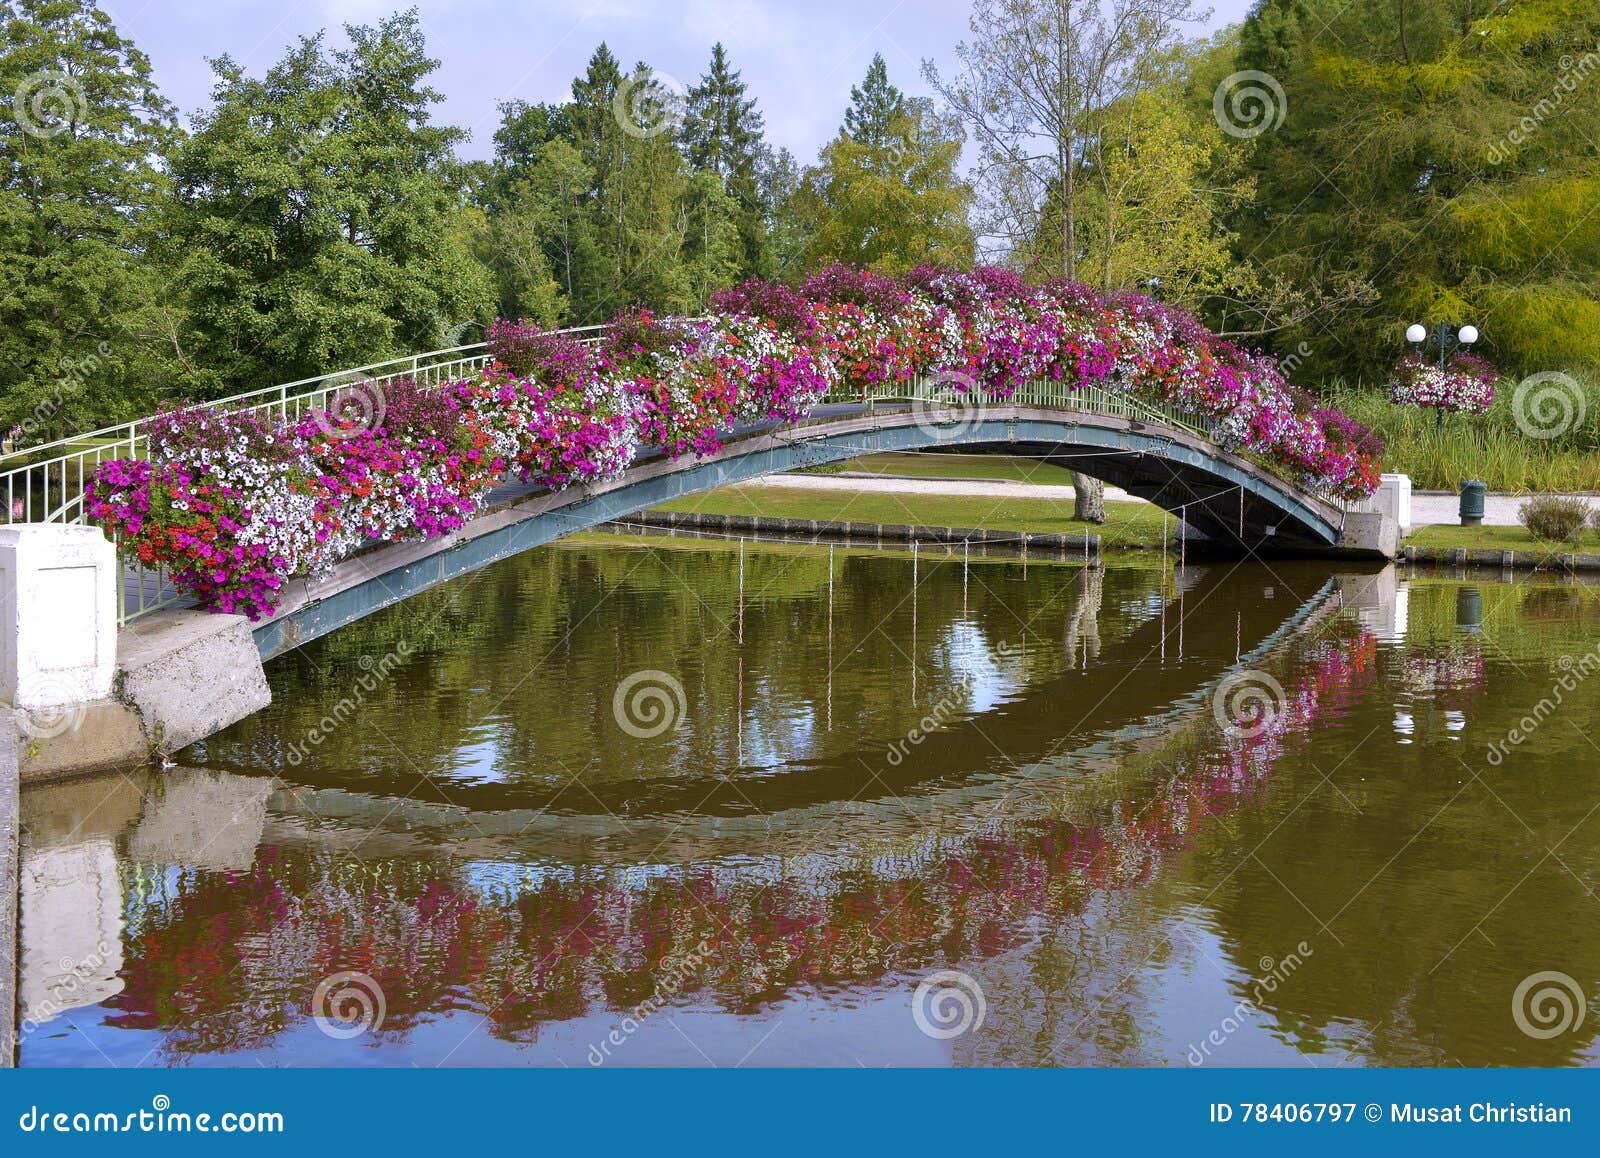 flowery bridge at bagnoles-de-l'orne